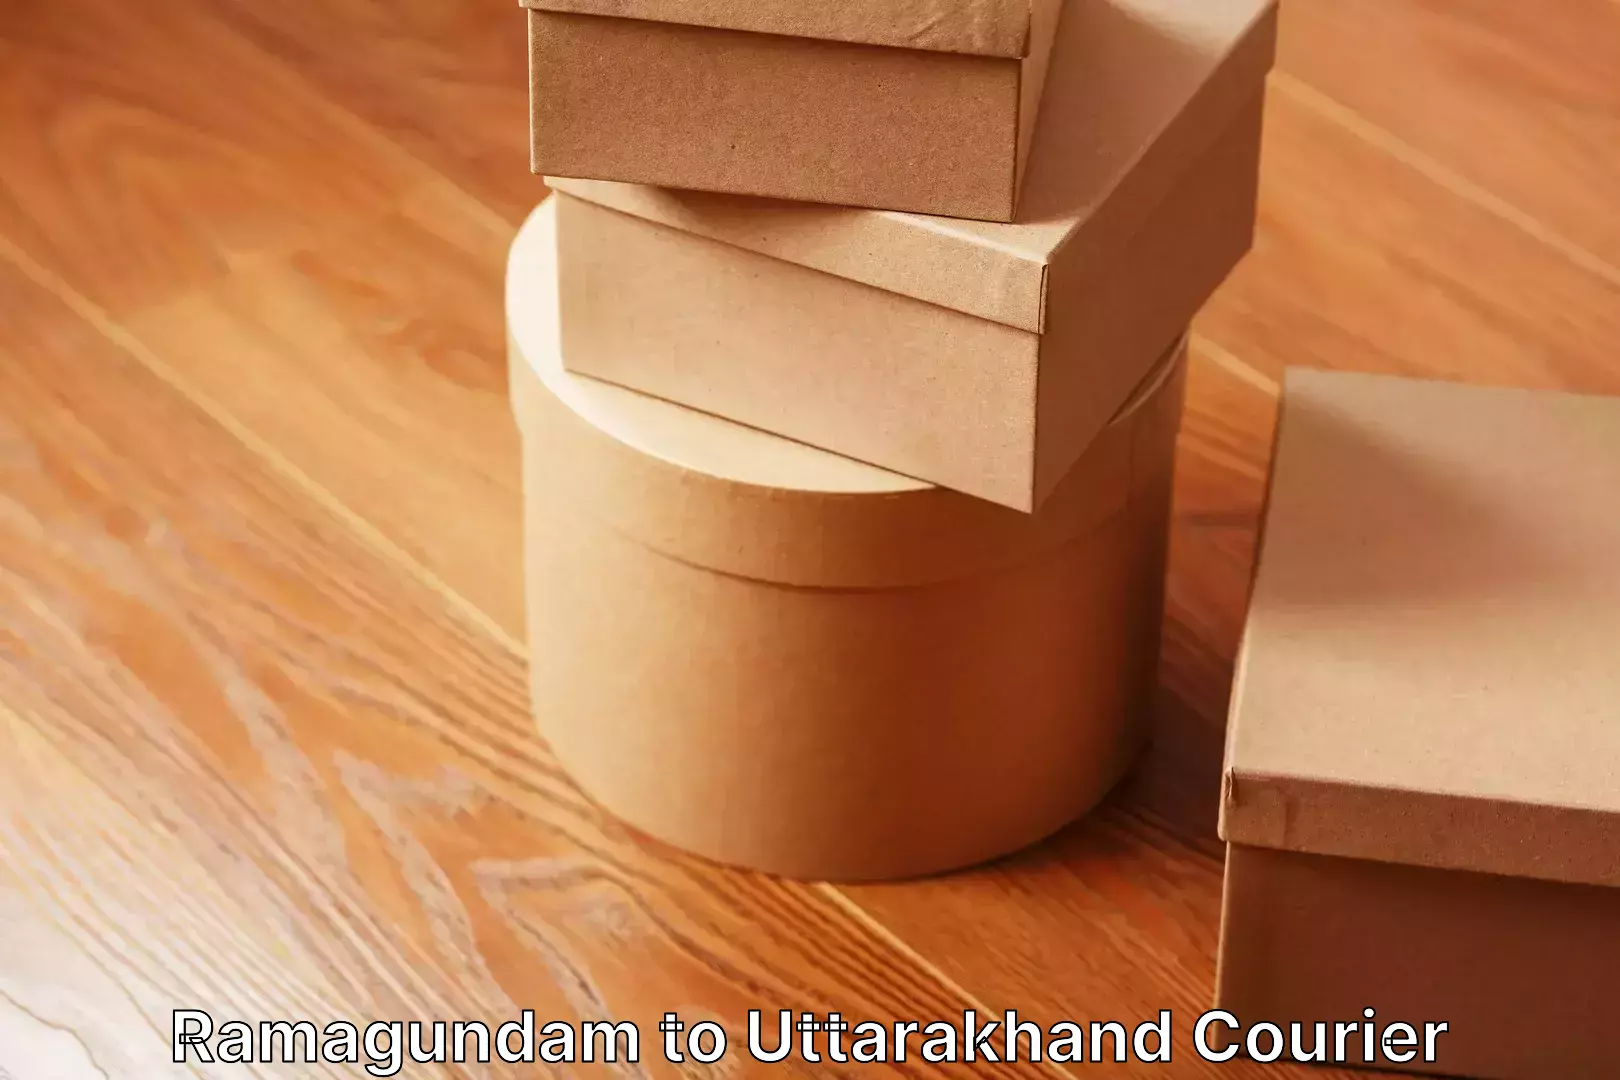 Efficient moving company Ramagundam to Uttarakhand